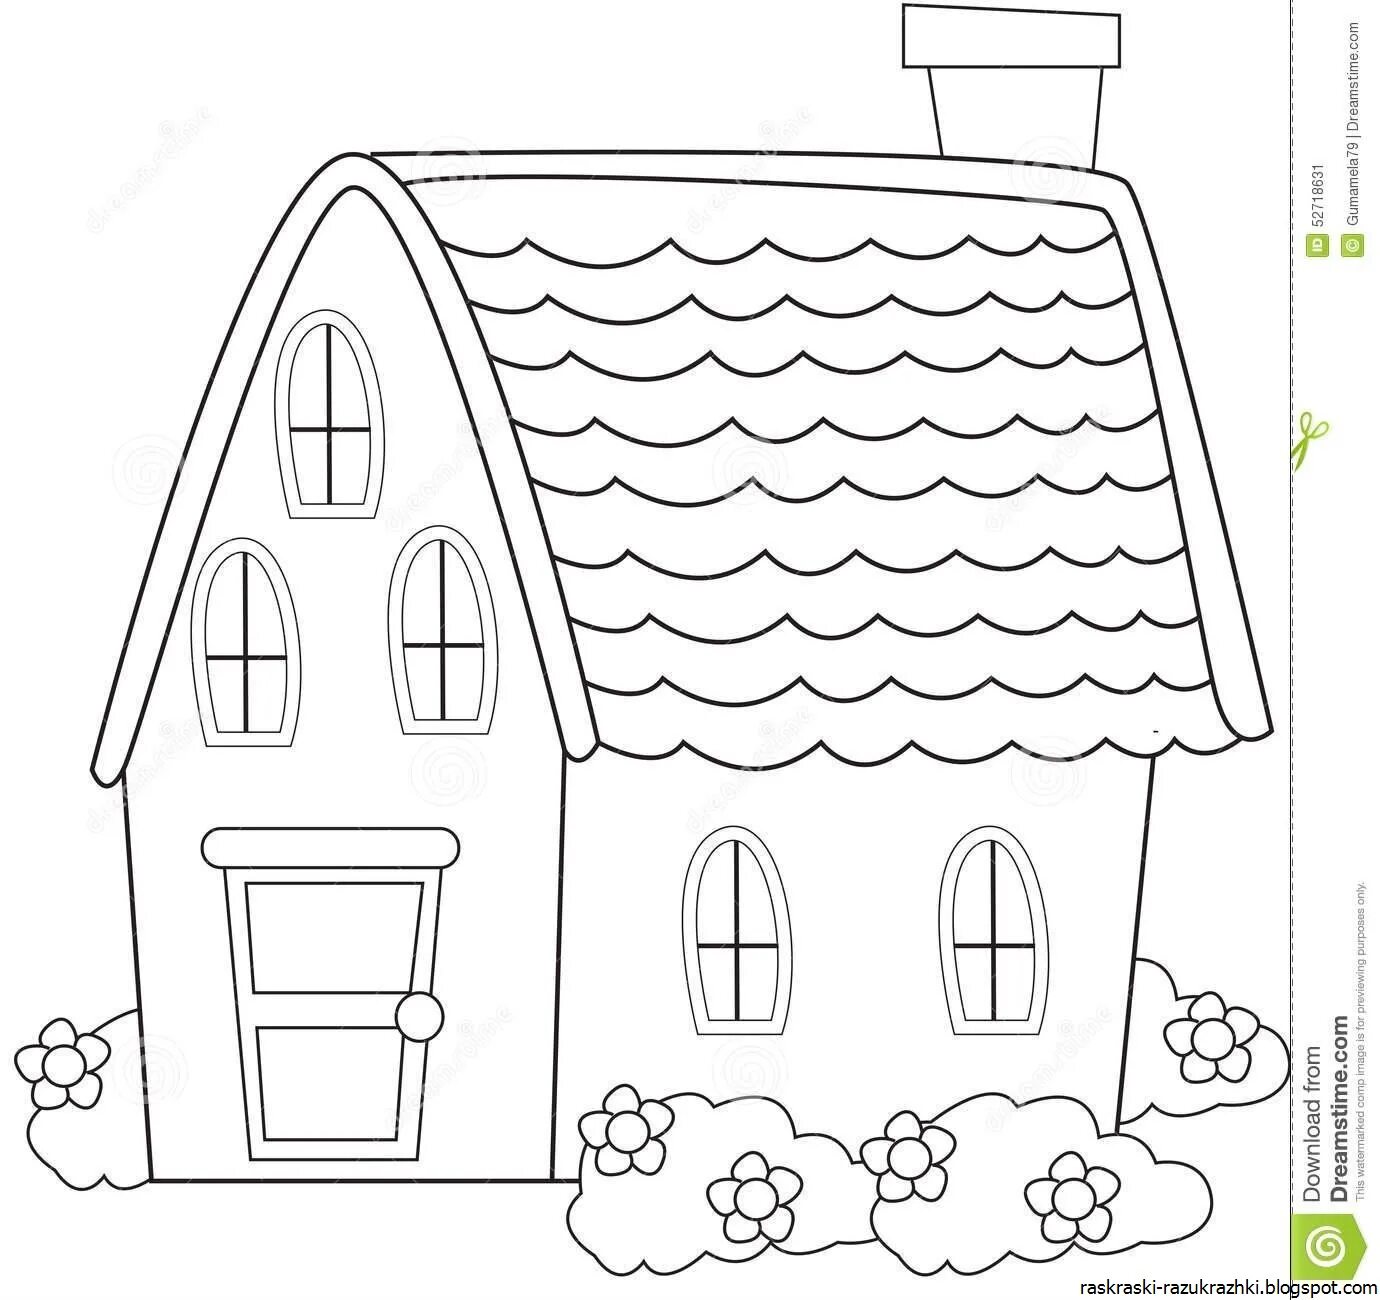 Раскраска чудесные домики для детей 4-5 лет